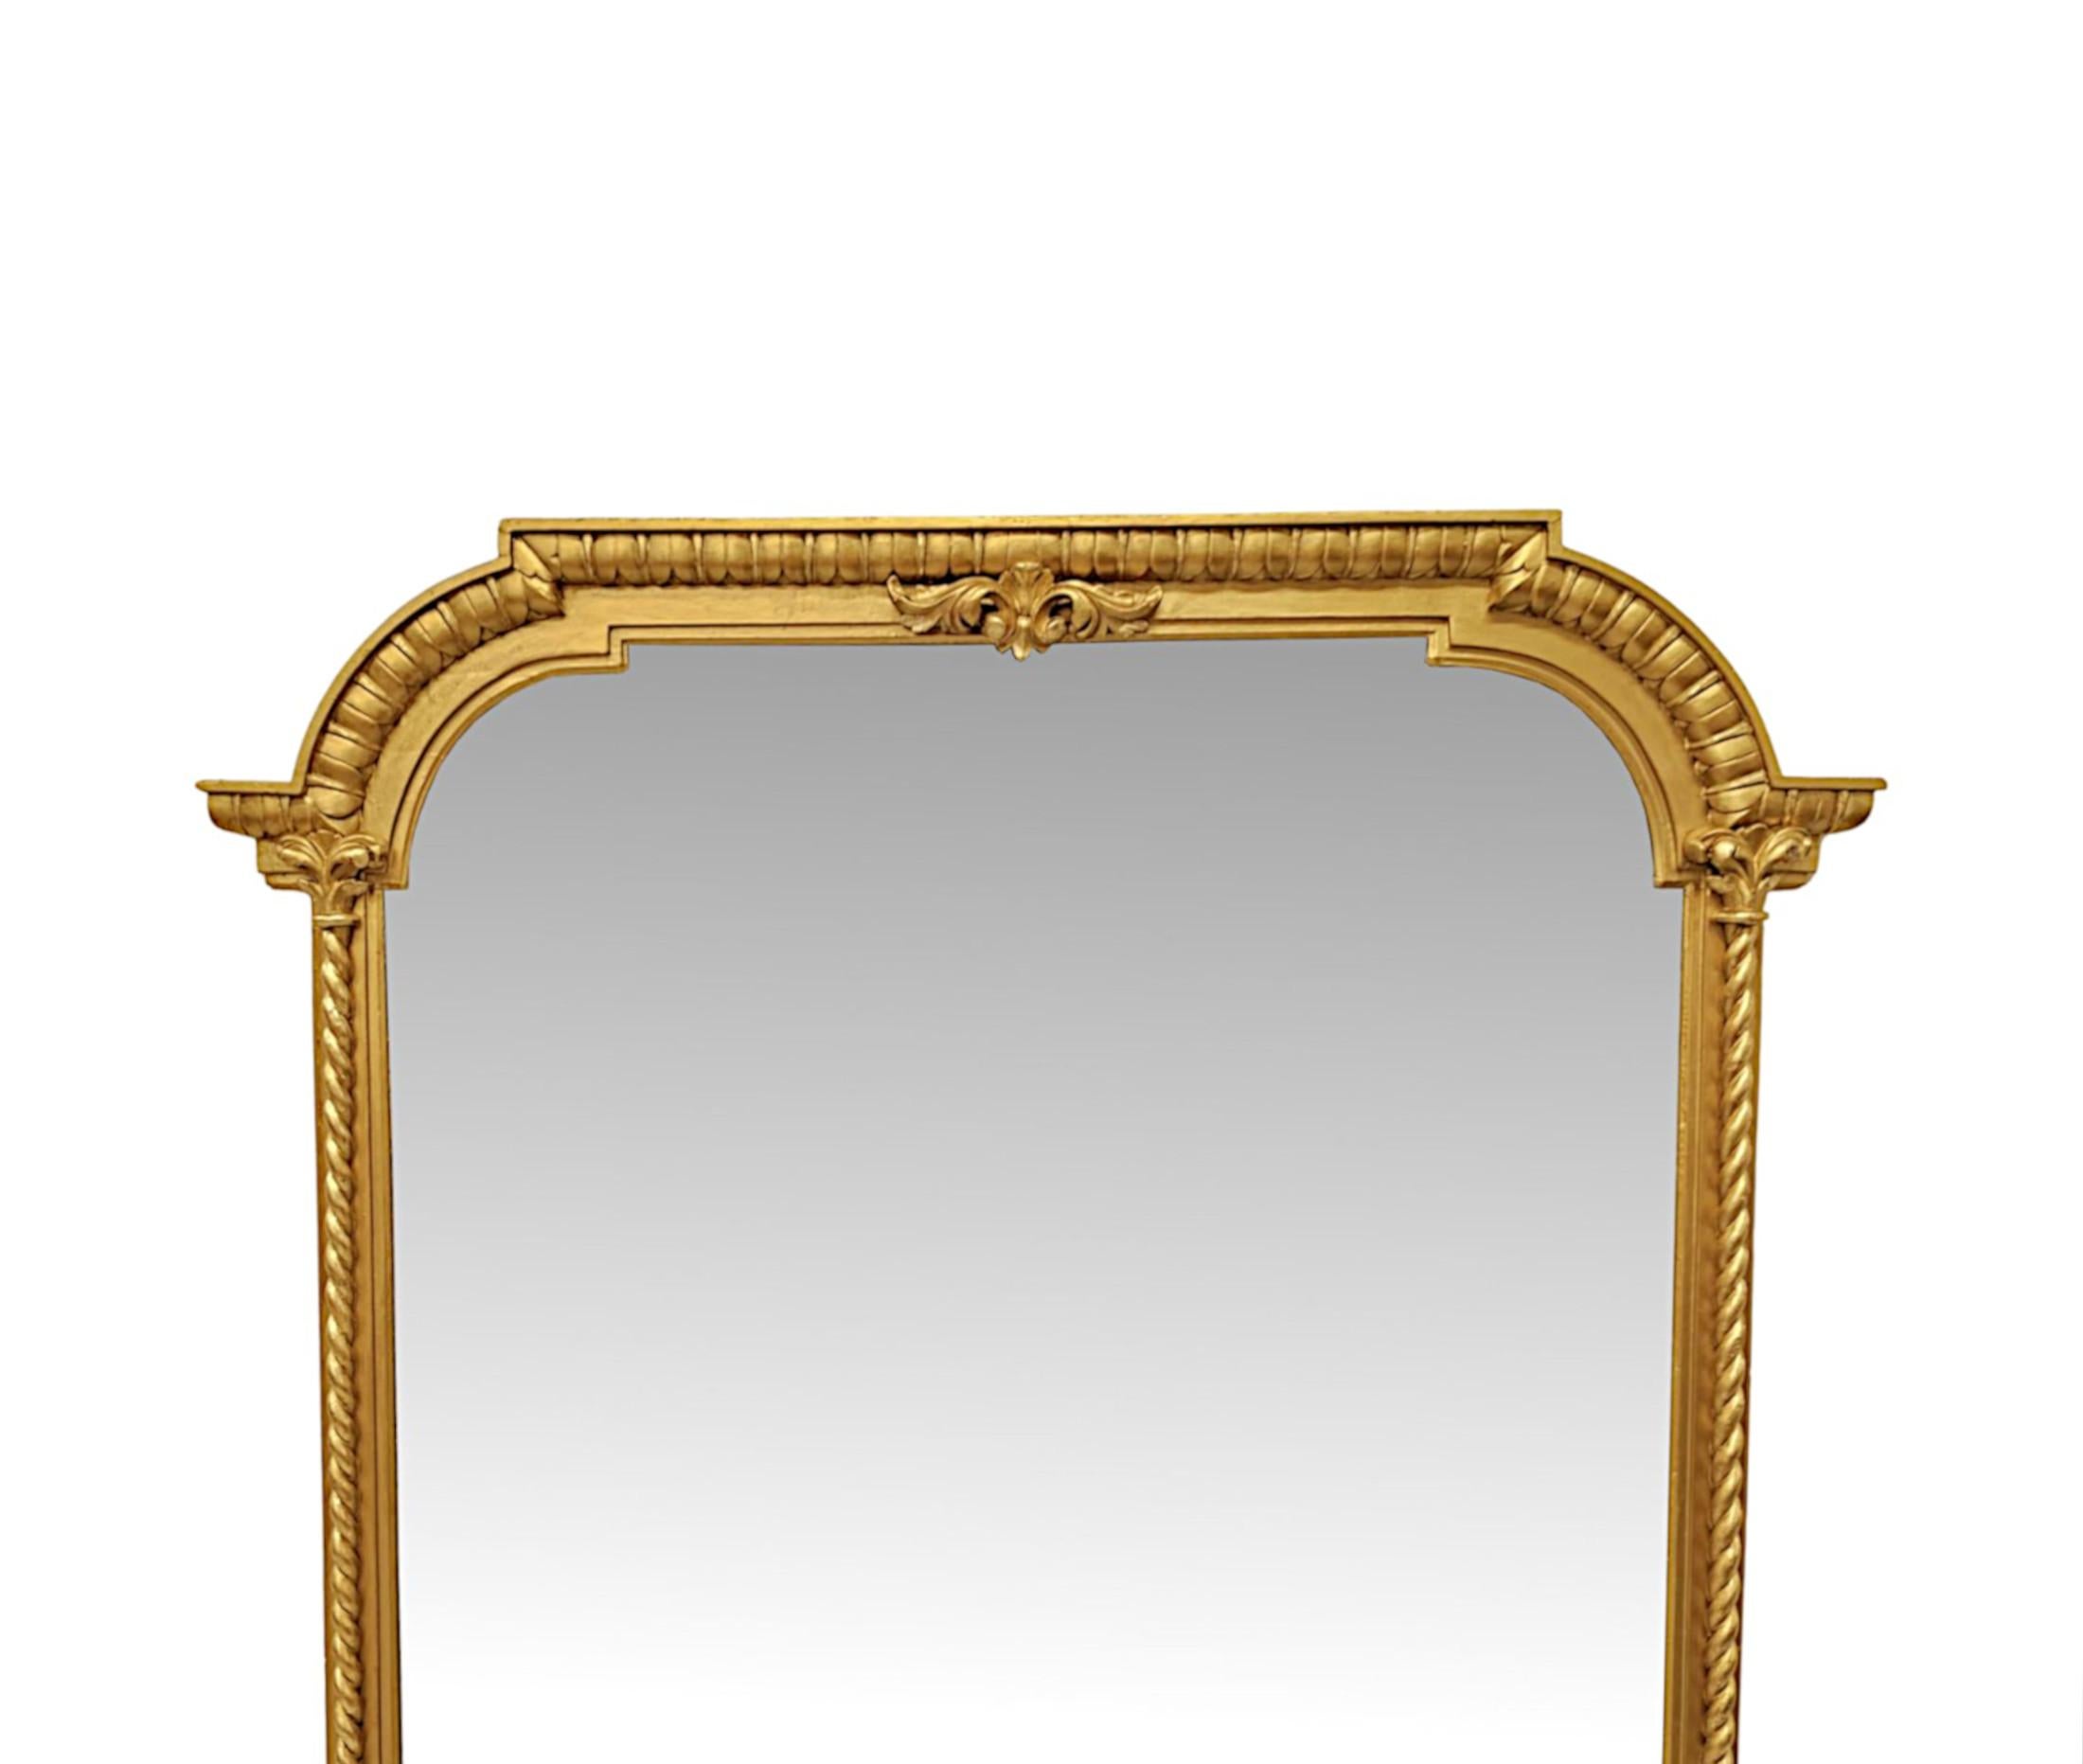 Un fabuleux miroir en bois doré du XIXe siècle, finement sculpté à la main, de grandes proportions et d'une qualité exceptionnelle.  La plaque de verre miroir au mercure de forme rectangulaire est placée dans un cadre en bois doré sculpté, lambrissé